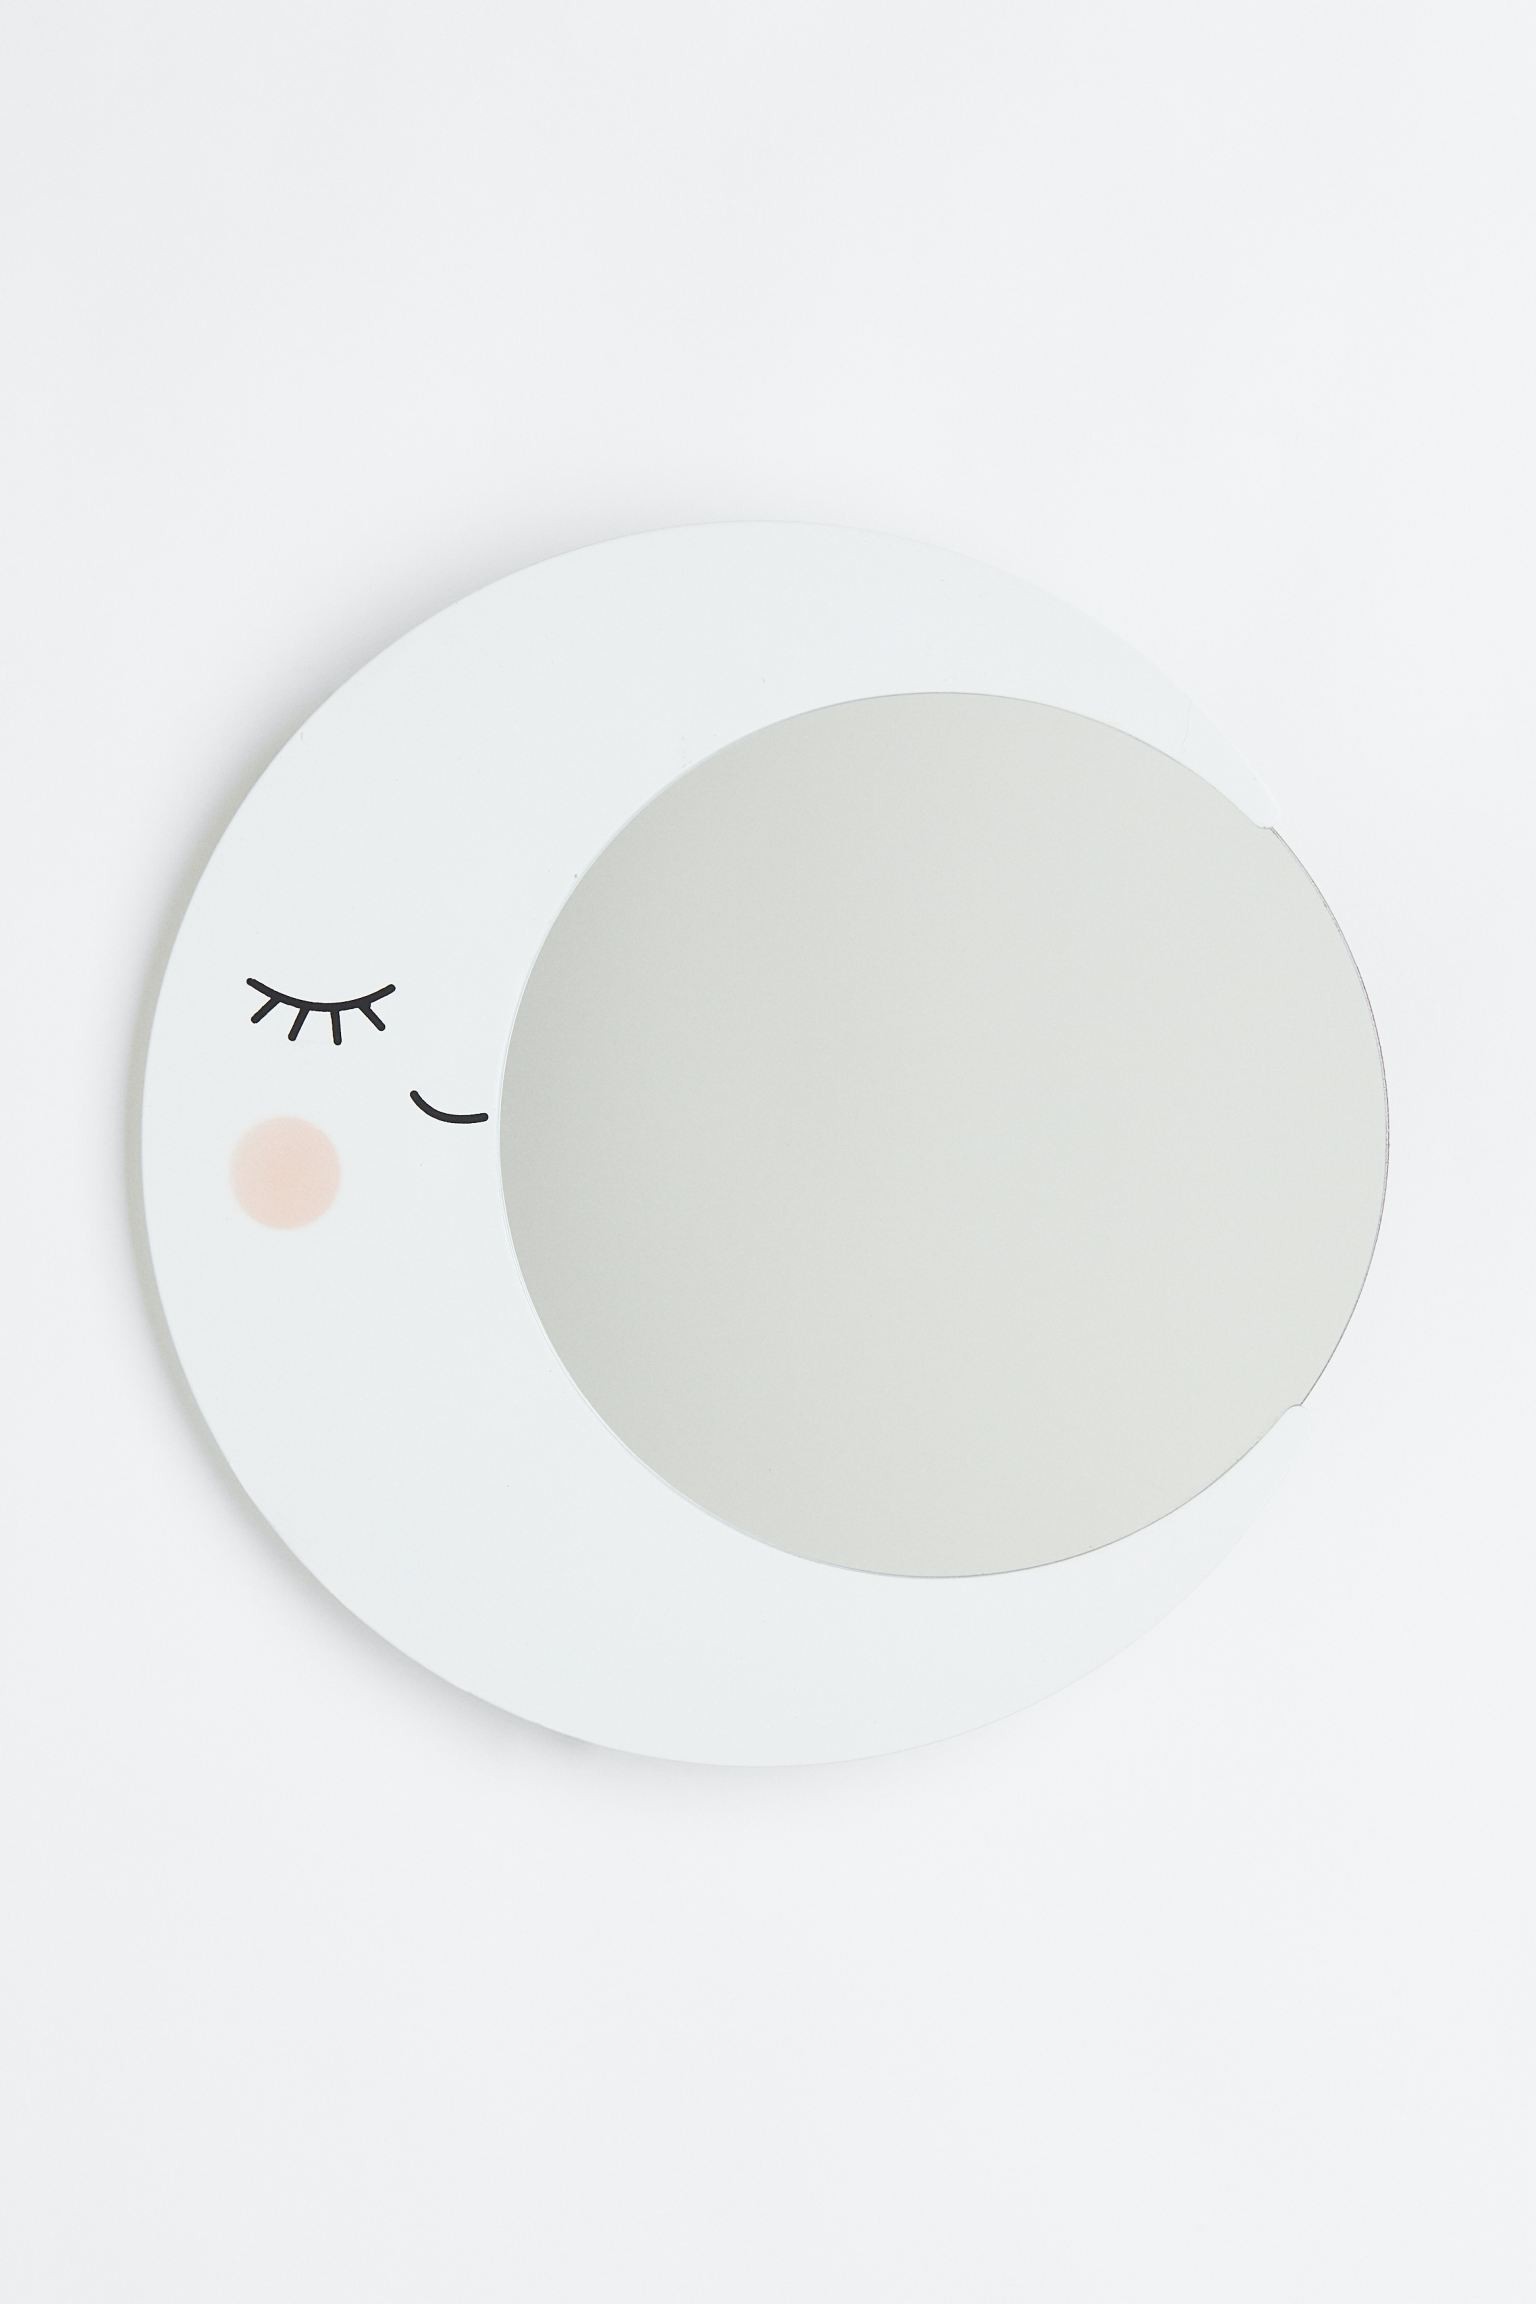 H&M Home Дзеркало у формі місяця, Білий/Місяць 1108836001 | 1108836001